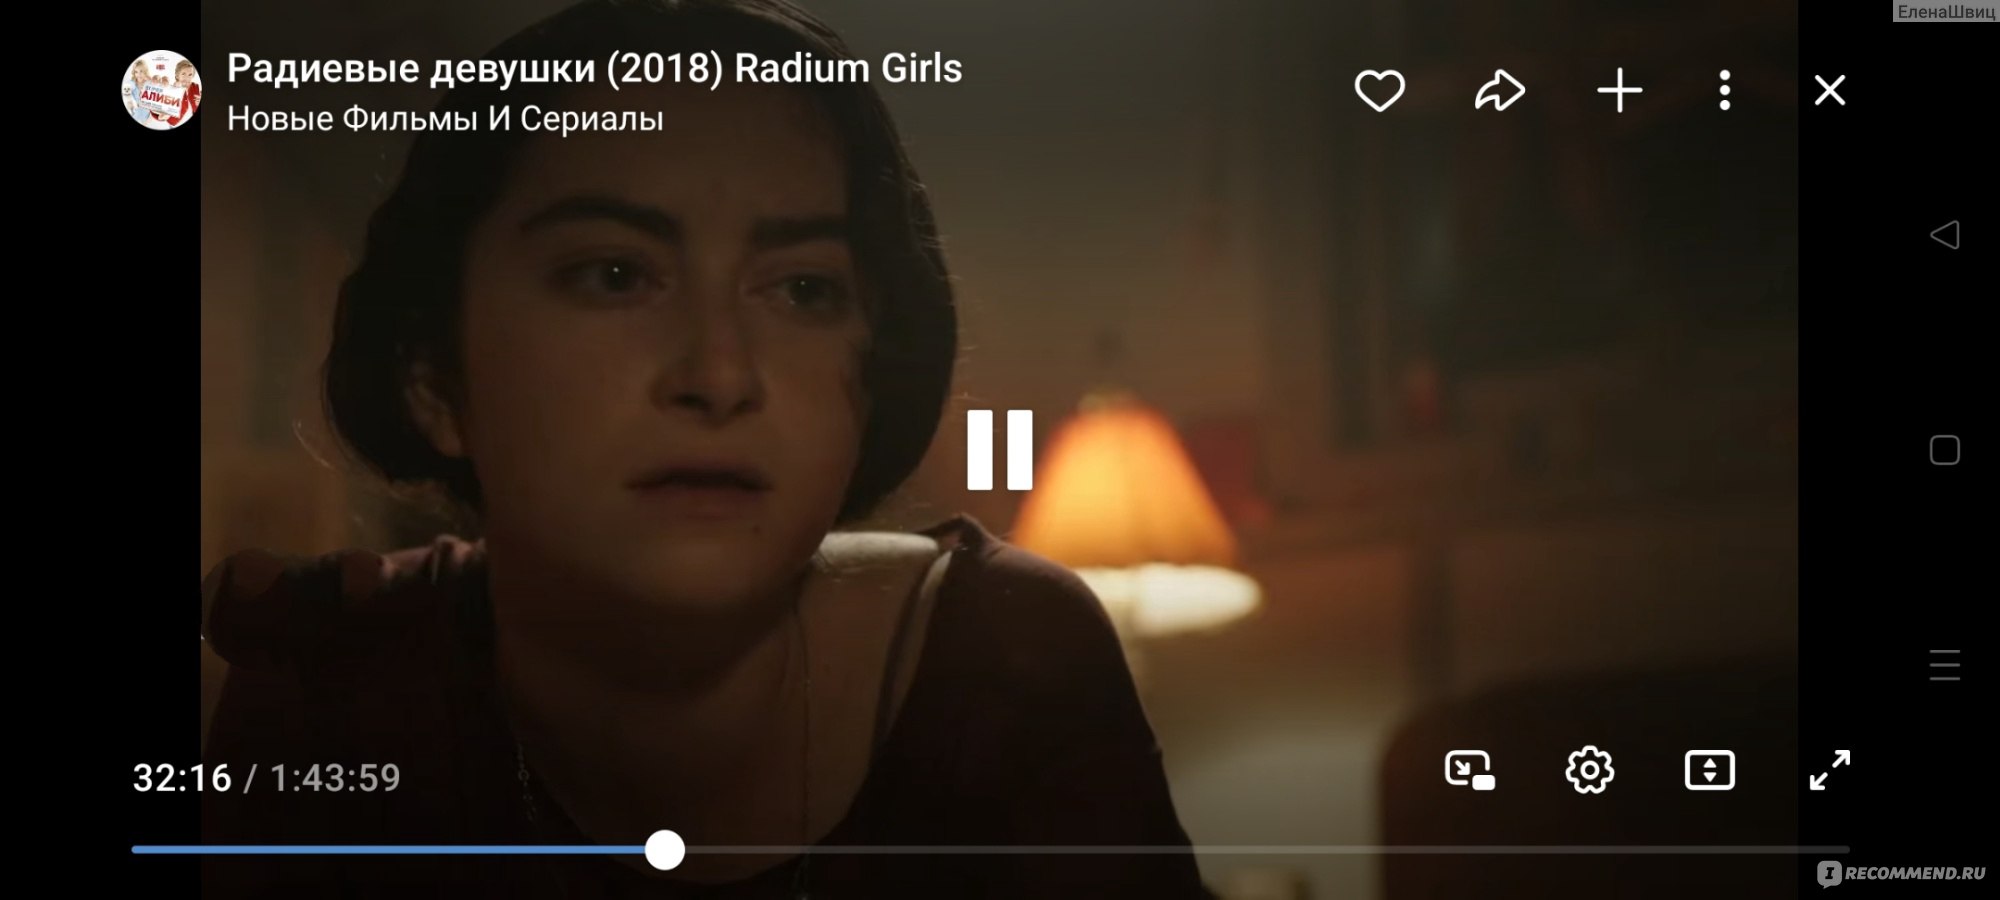 Радиевые девушки/Radium Girls (2018, фильм)